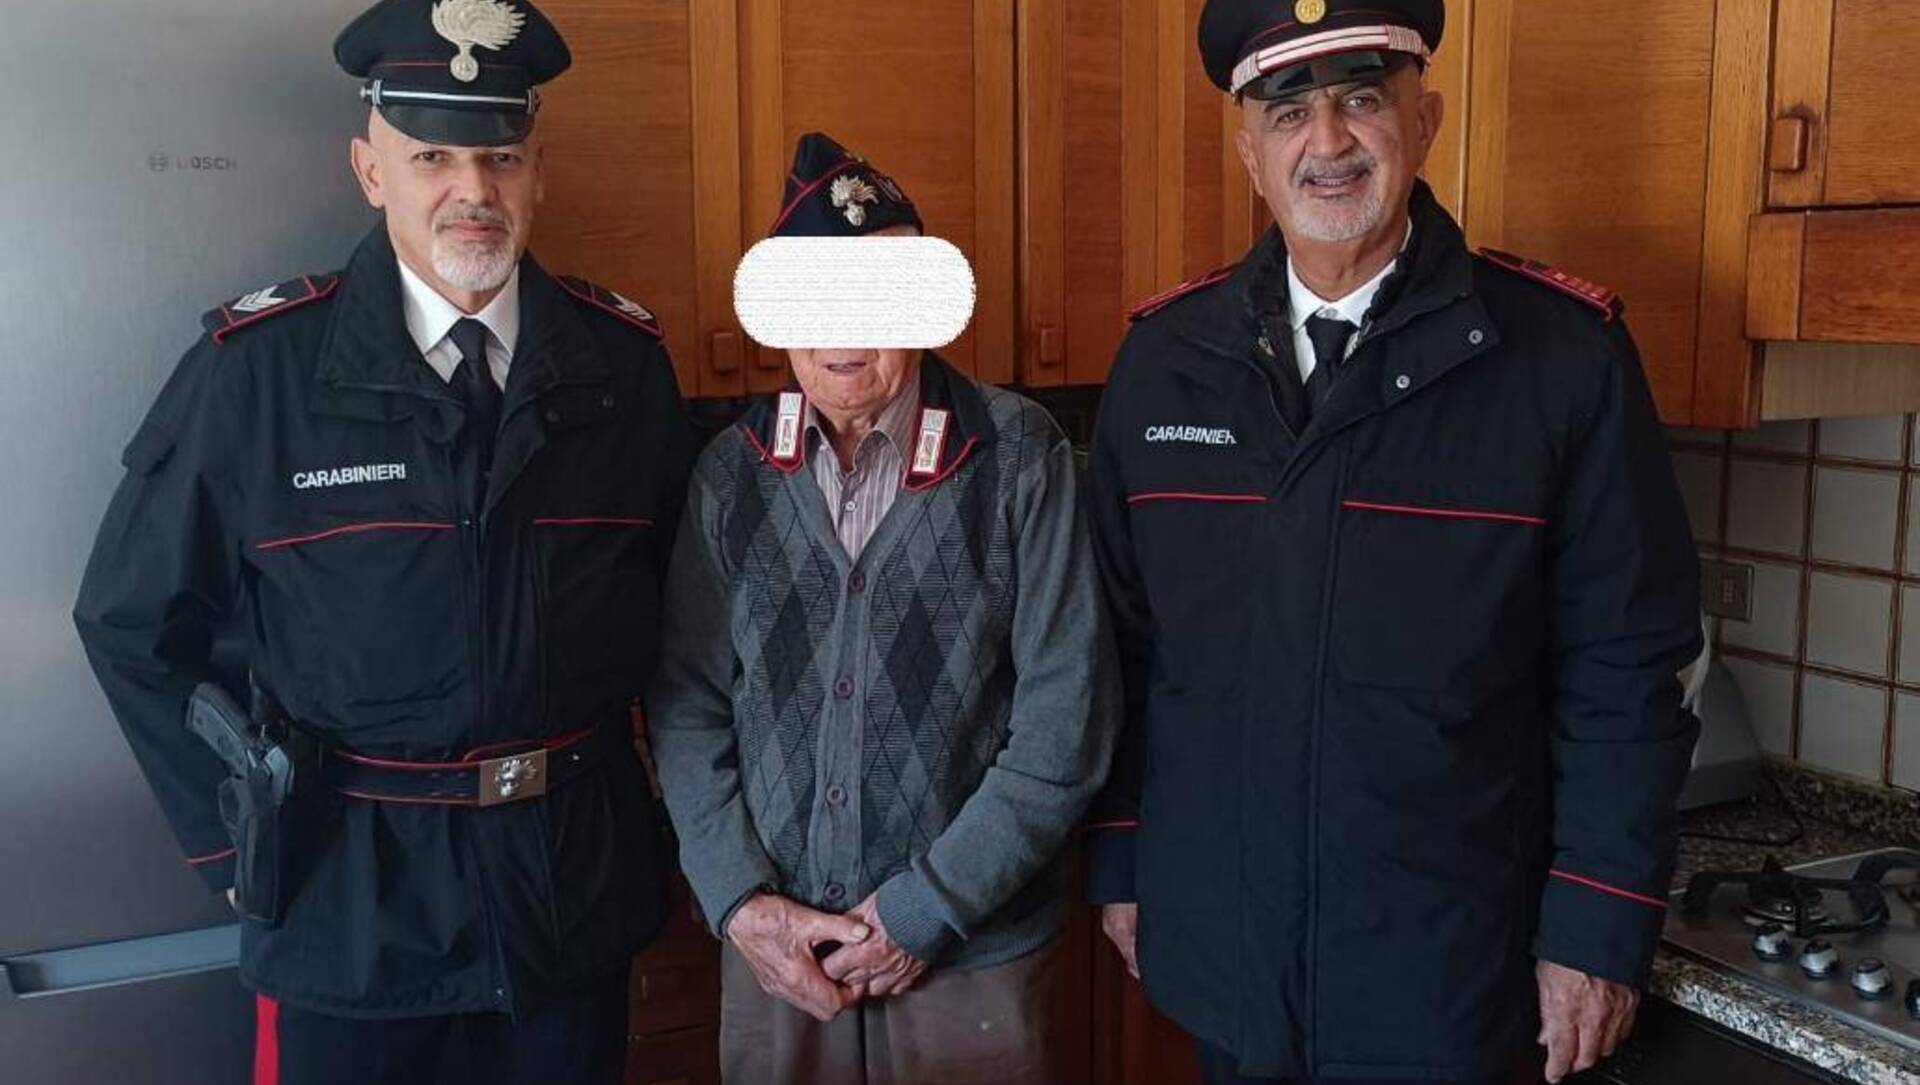 Nonnino ex carabiniere chiede di conoscere i “nuovi”: il comandante lo va a trovare